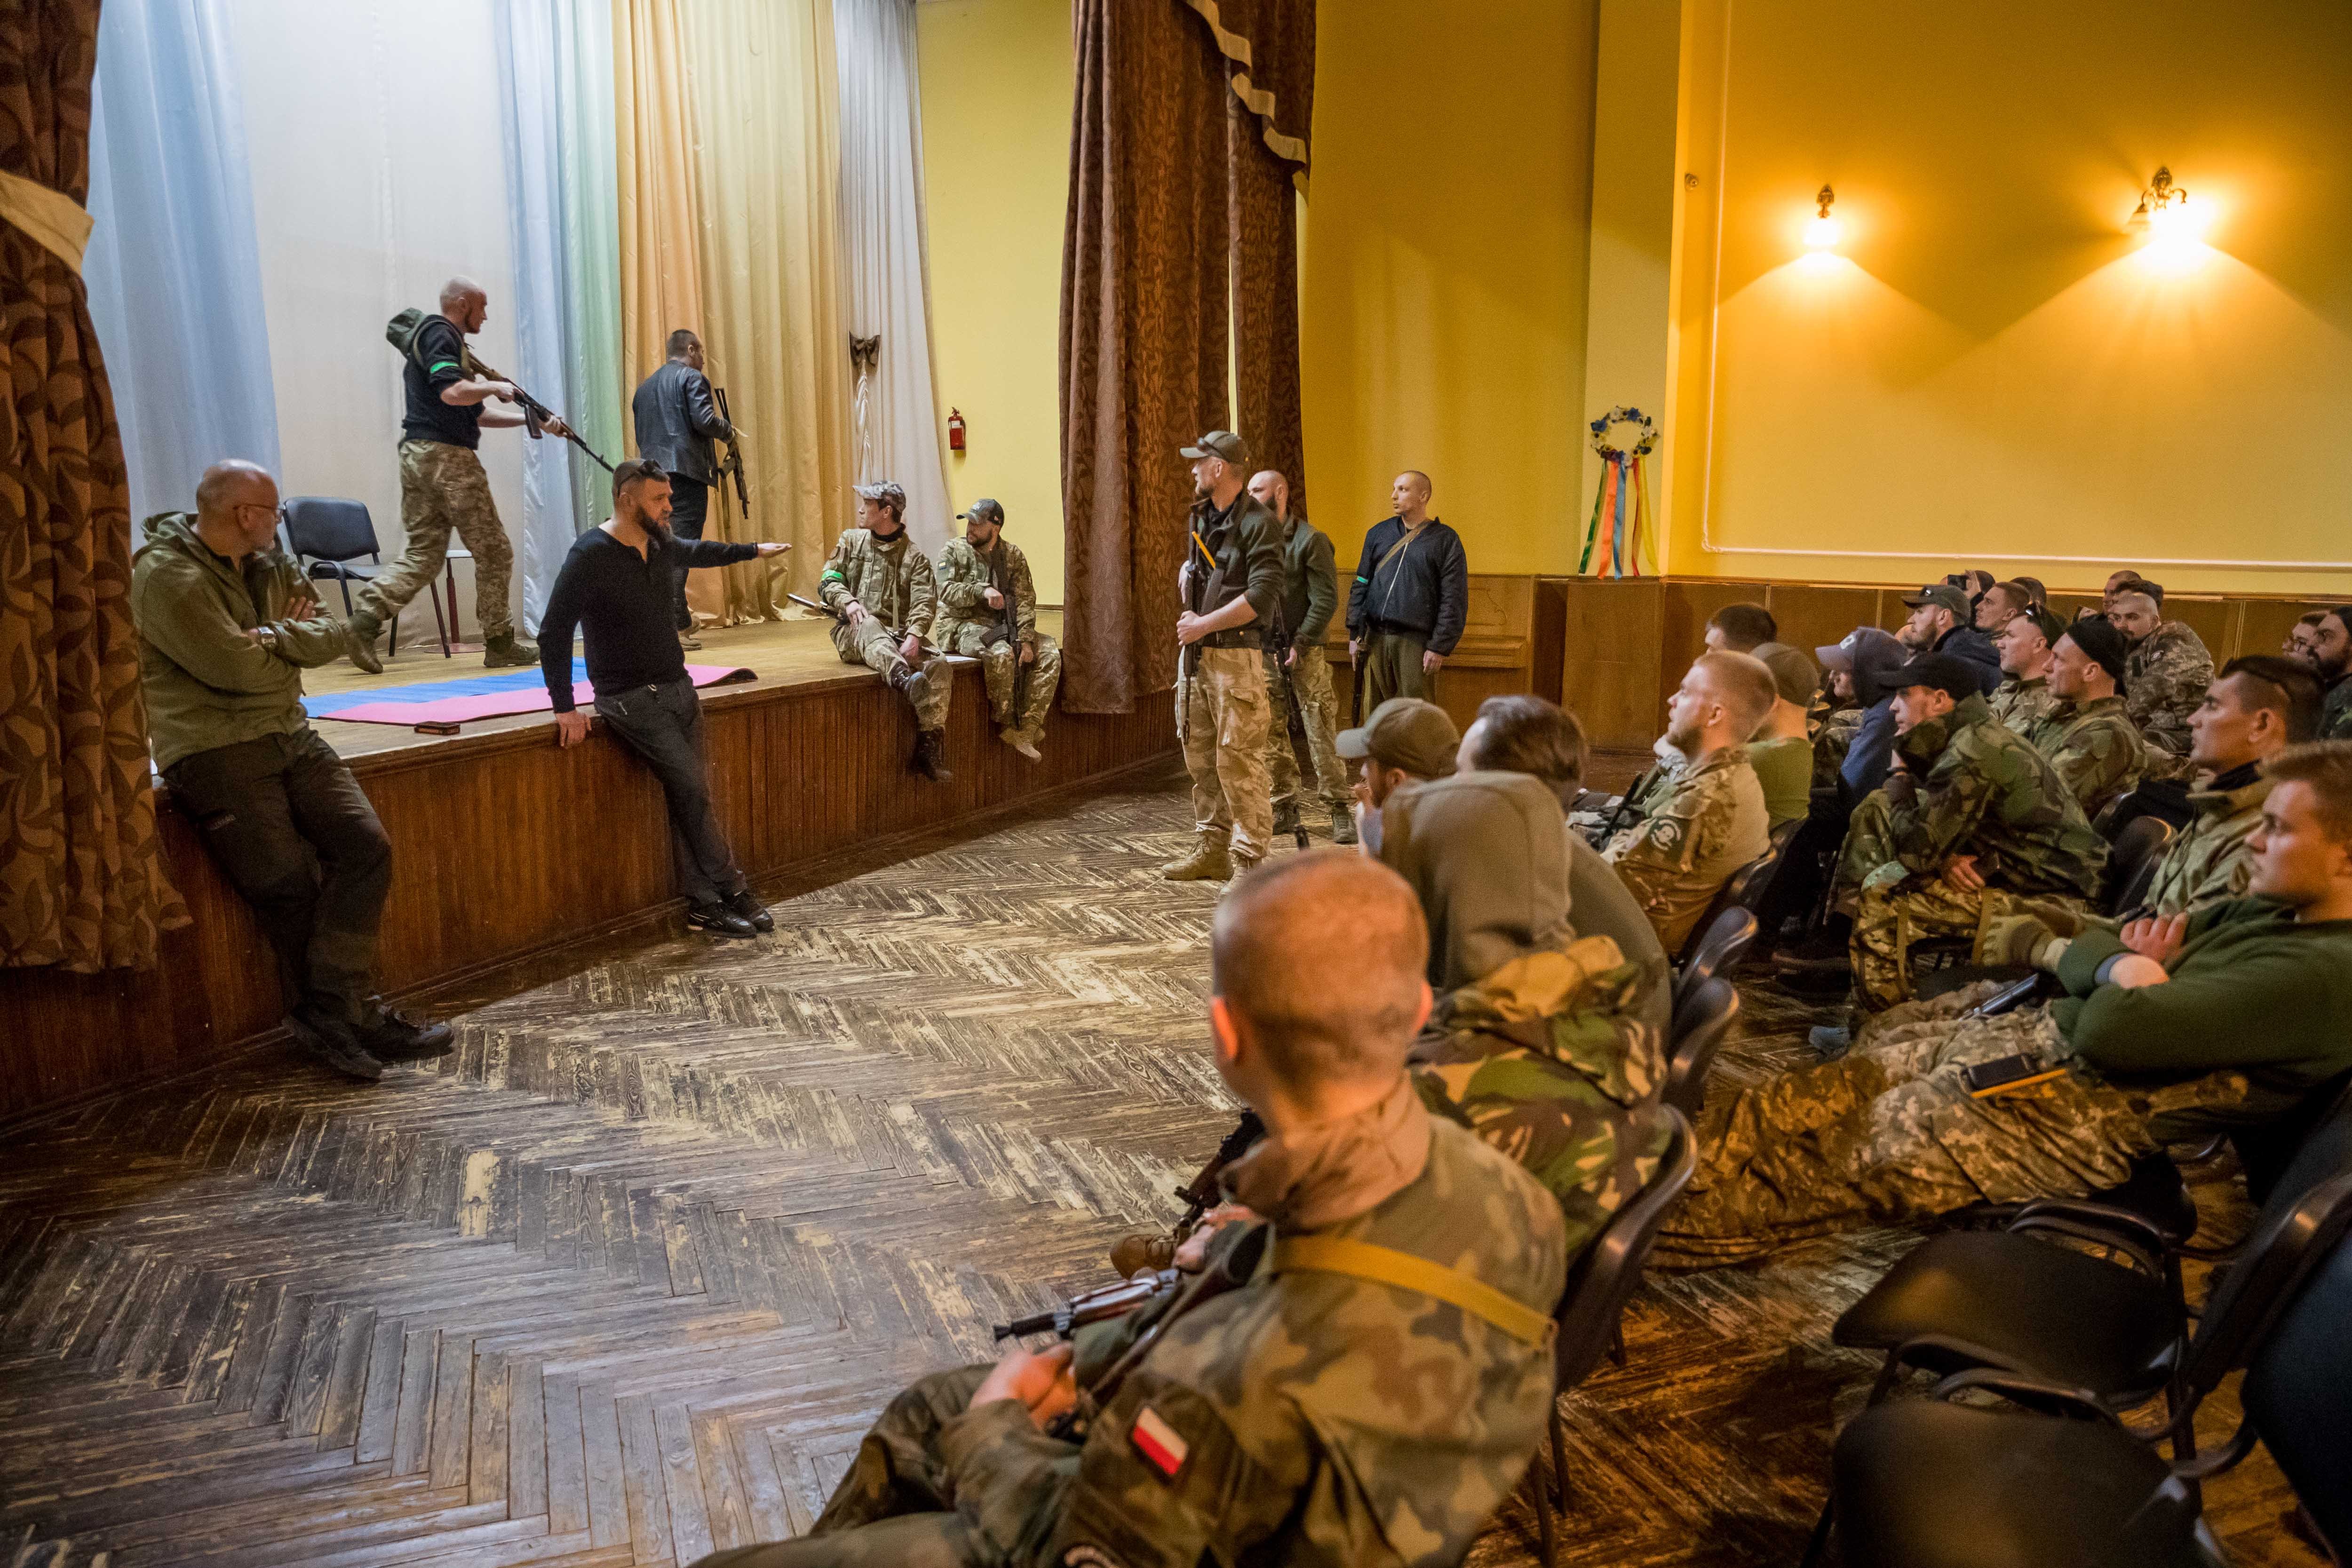 Los Estados Unidos entrenan a tropas ucranianas en las bases norteamericanas de Europa